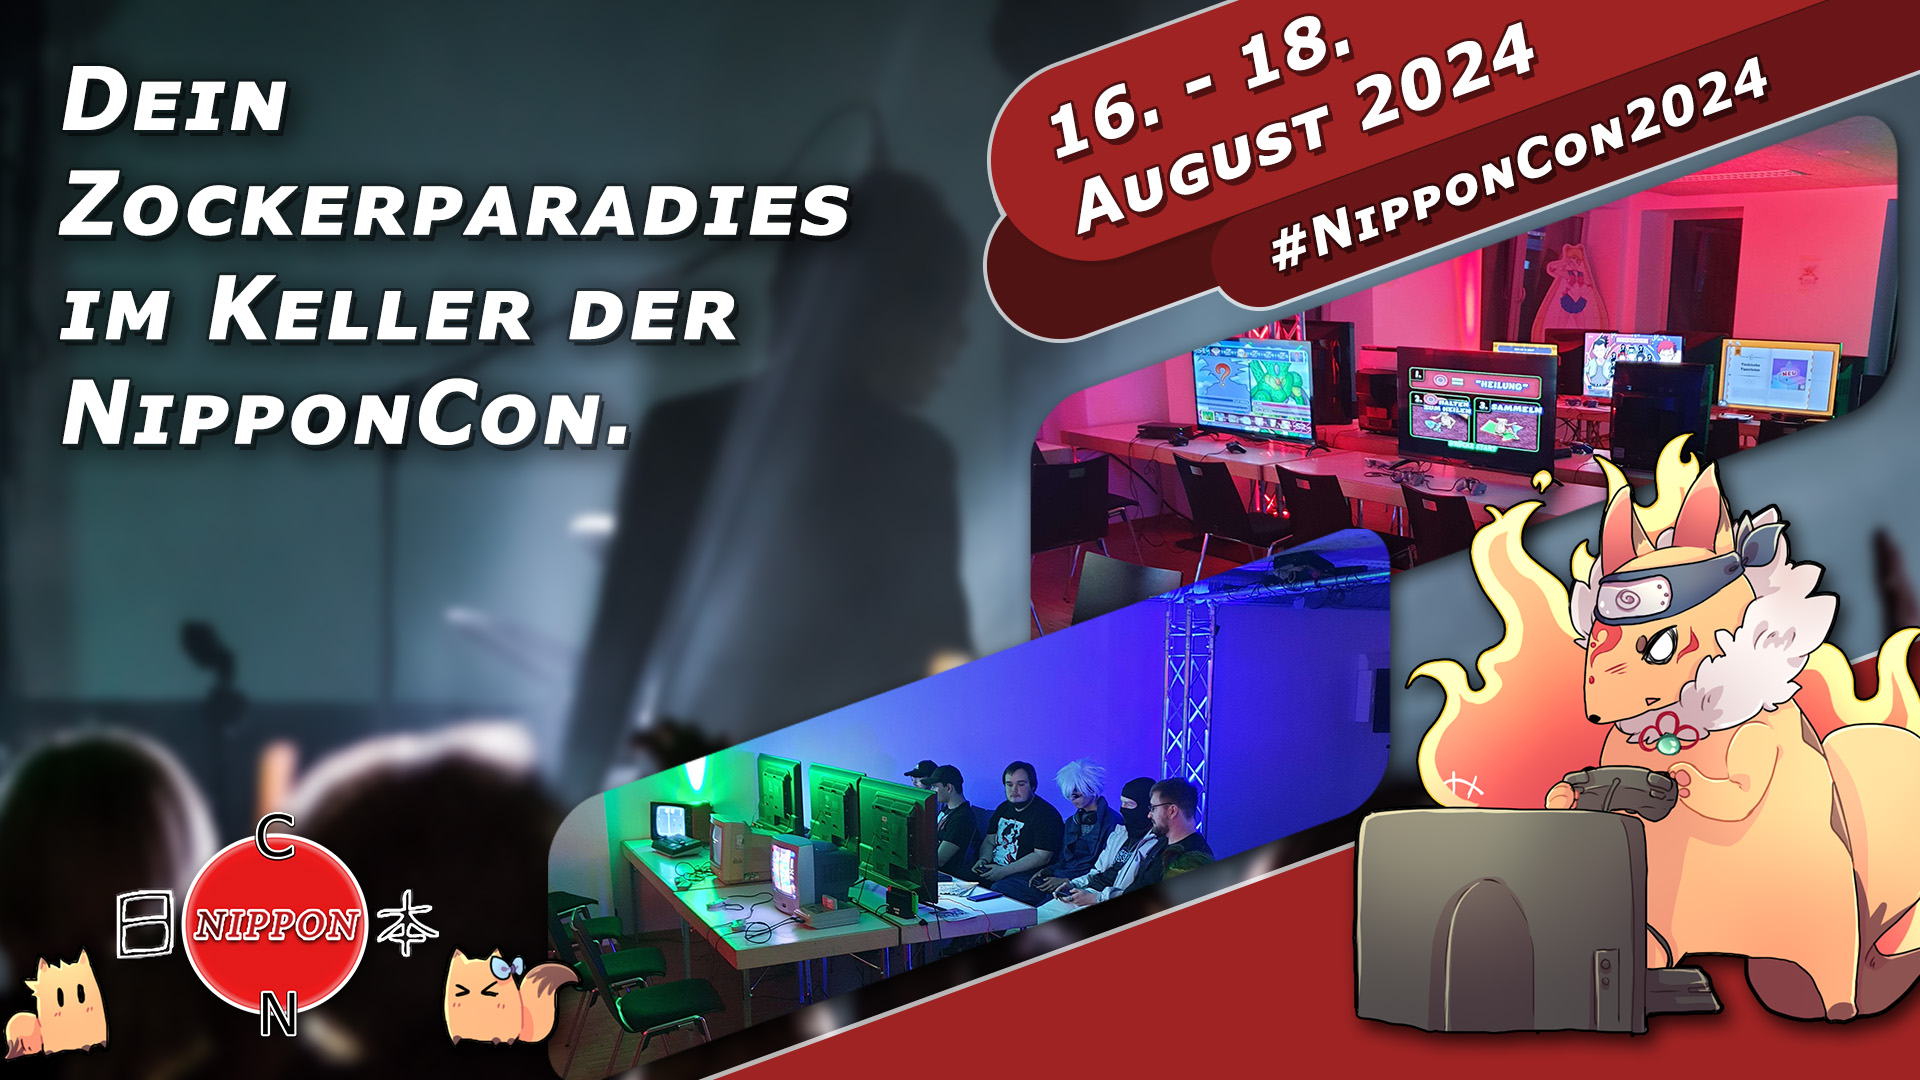 NipponCon 2024 Bremen. Vom 16. bis 18. August 2024. #NipponCon2024. Dein Zockerparadies im Keller der NipponCon.